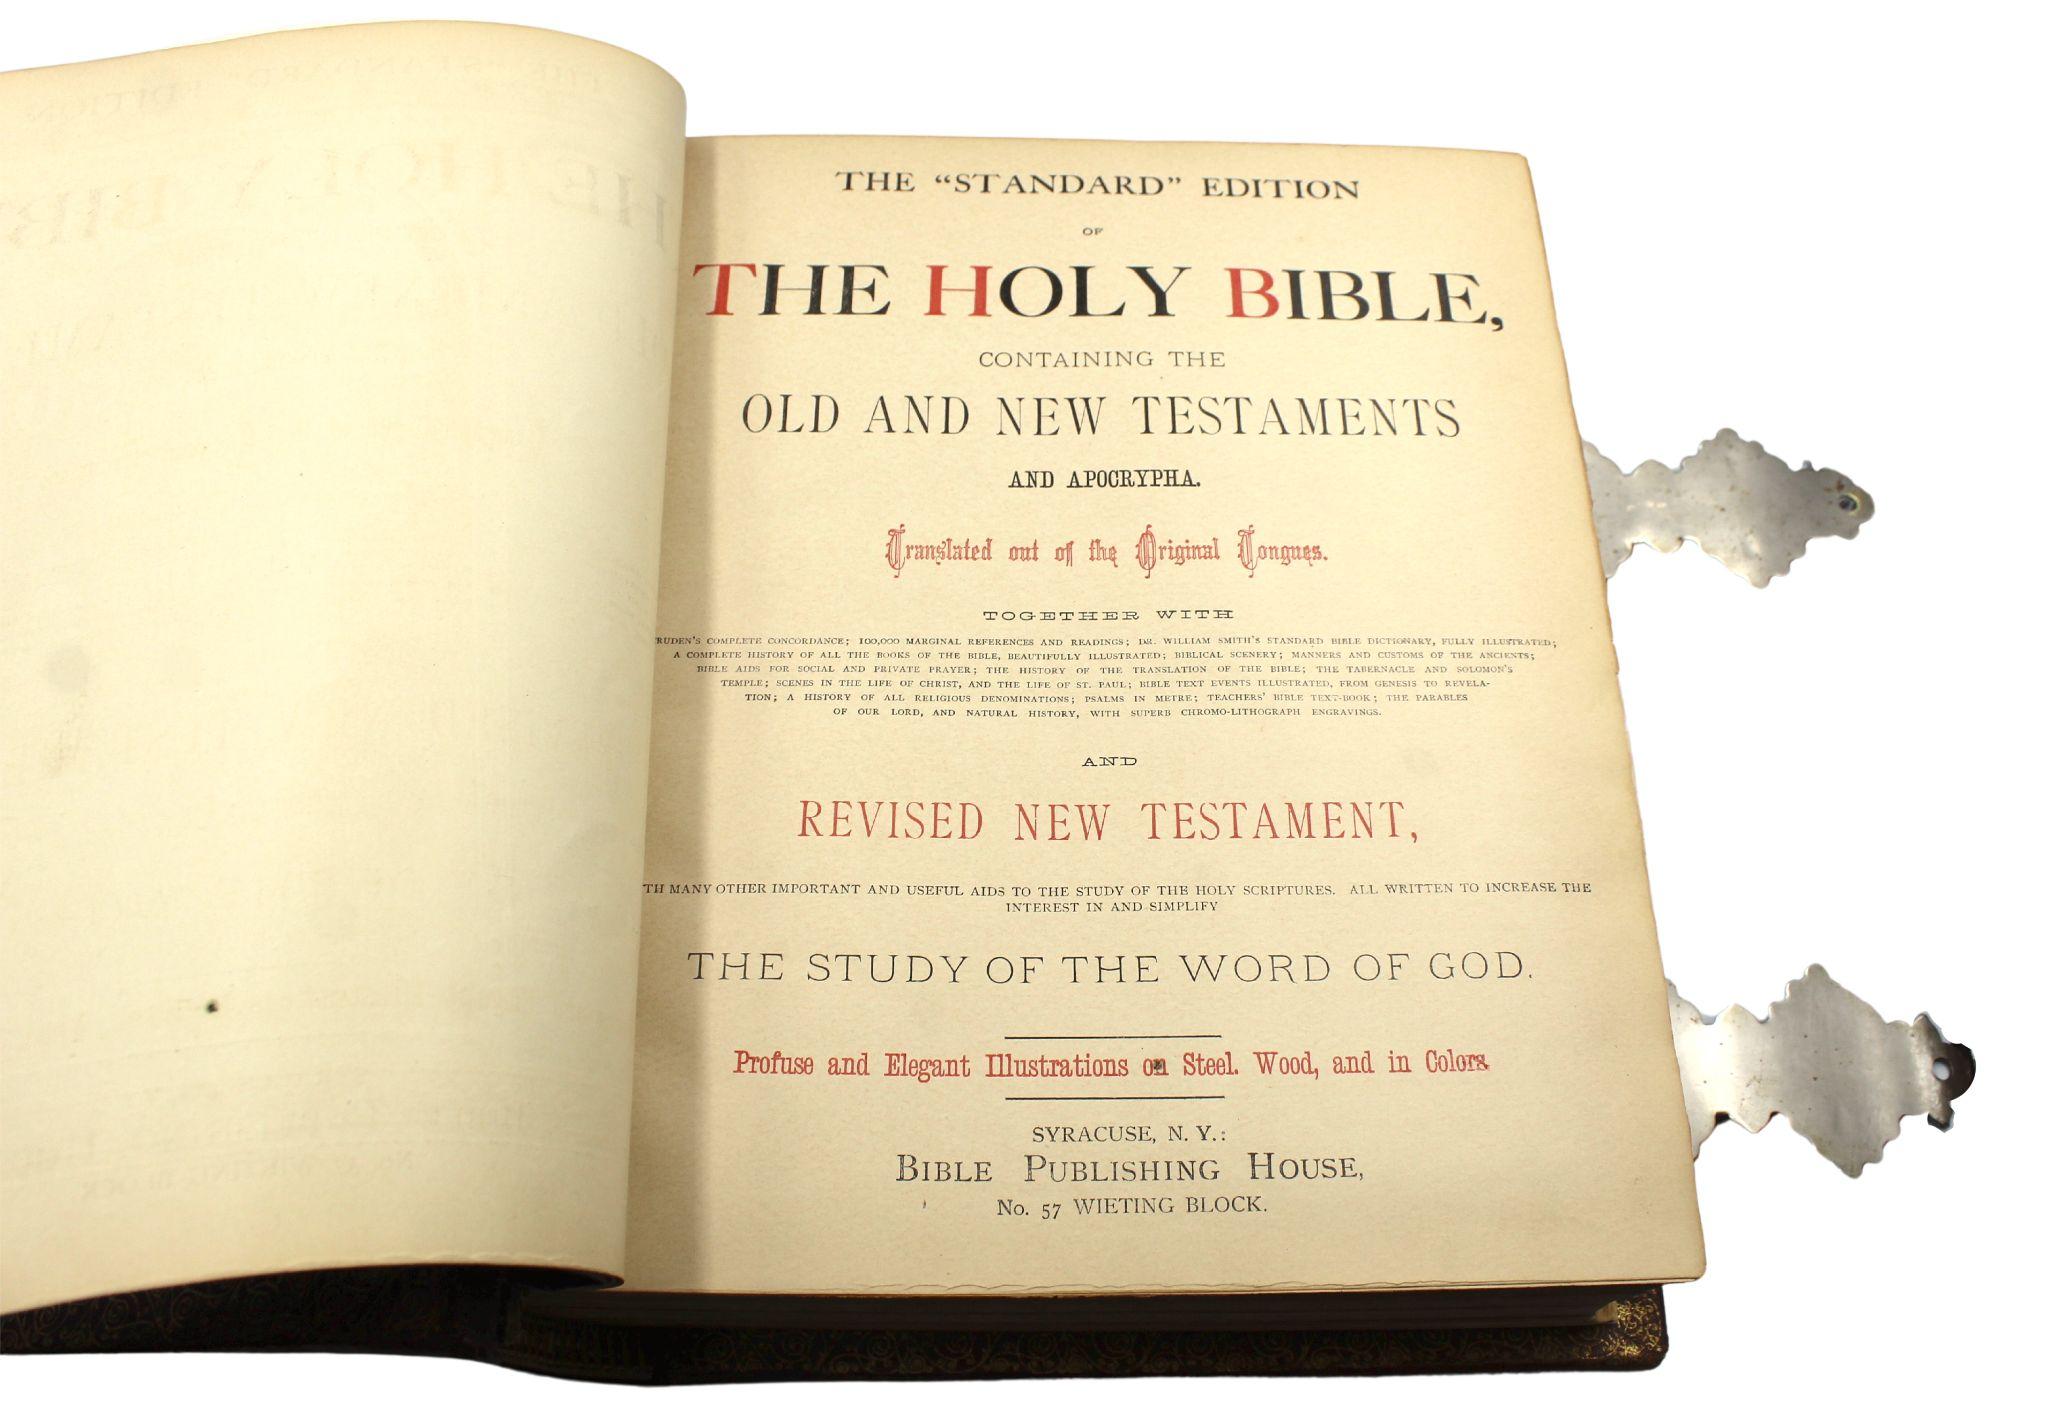 Fin du XIXe siècle The Holy Bible, édition standard, Bible familiale illustrée, 1885 en vente